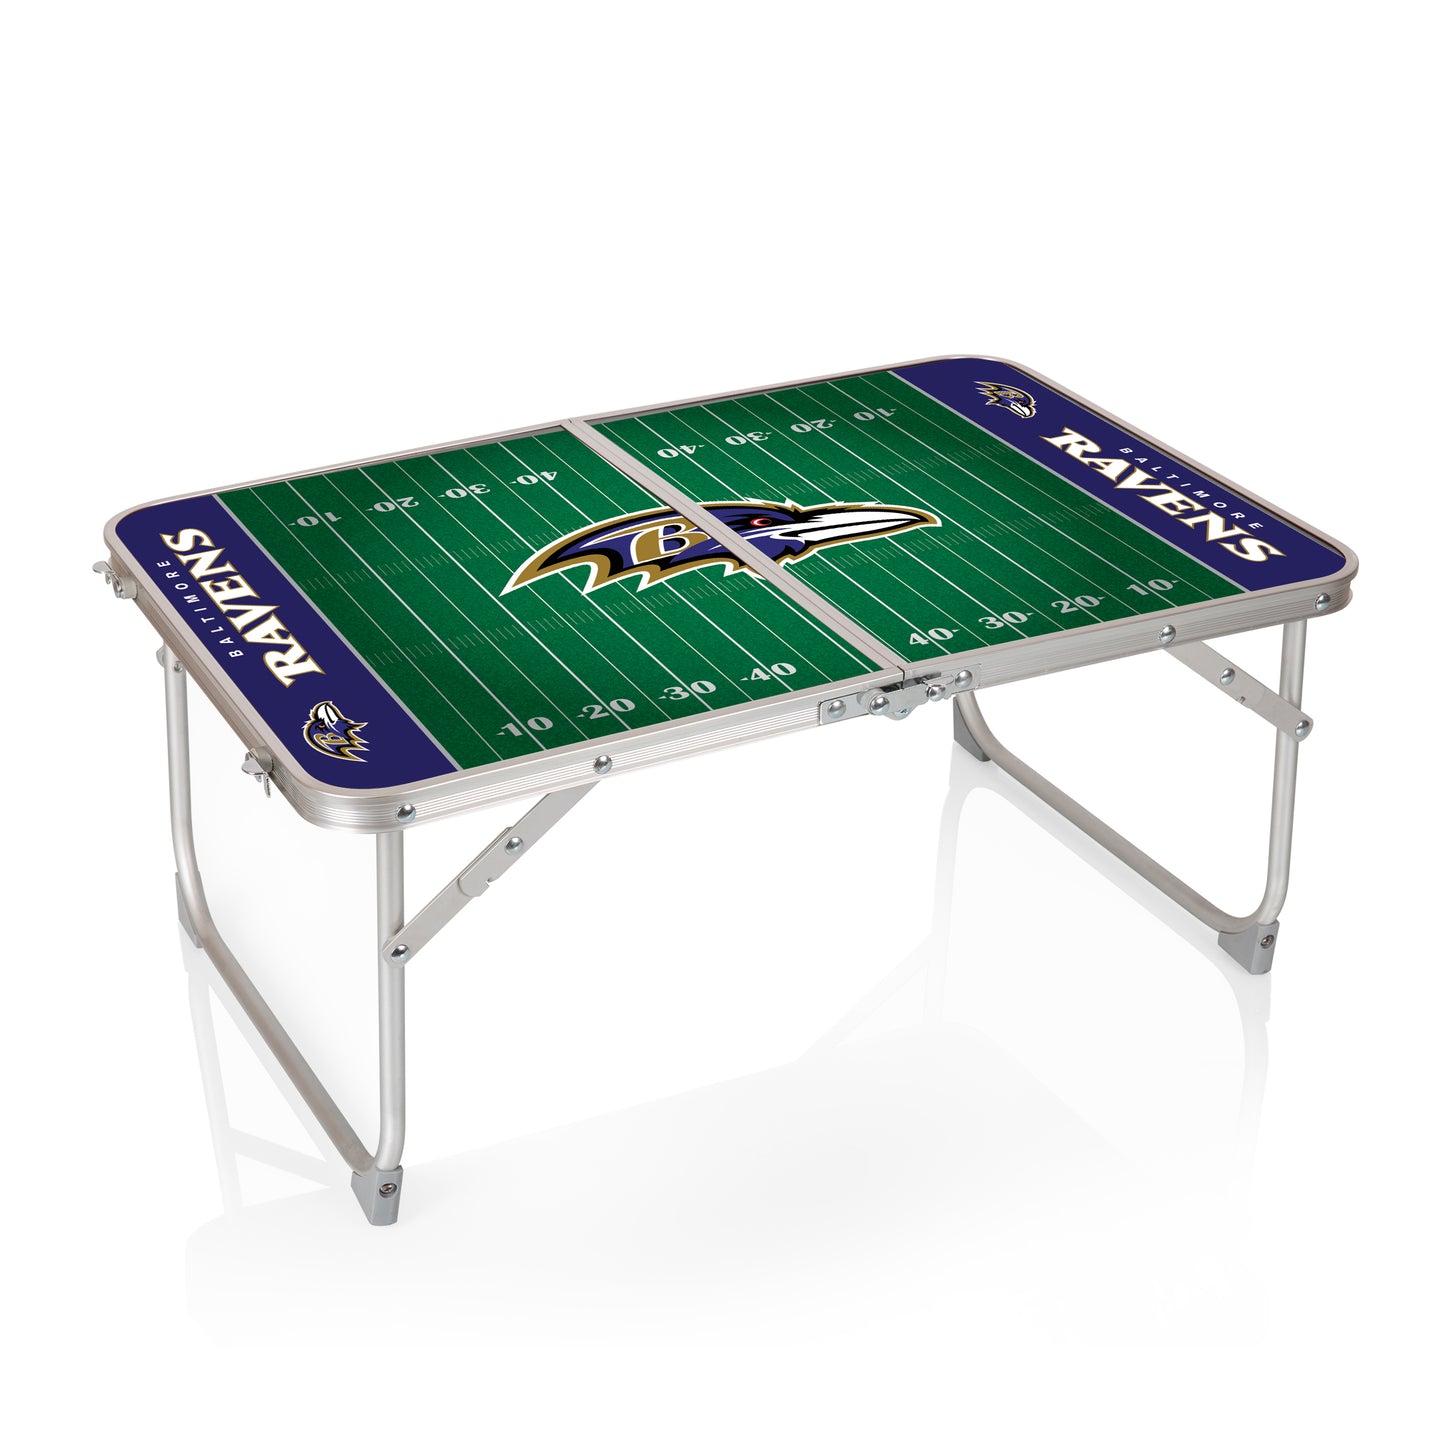 Baltimore Ravens - Concert Table Mini Portable Table